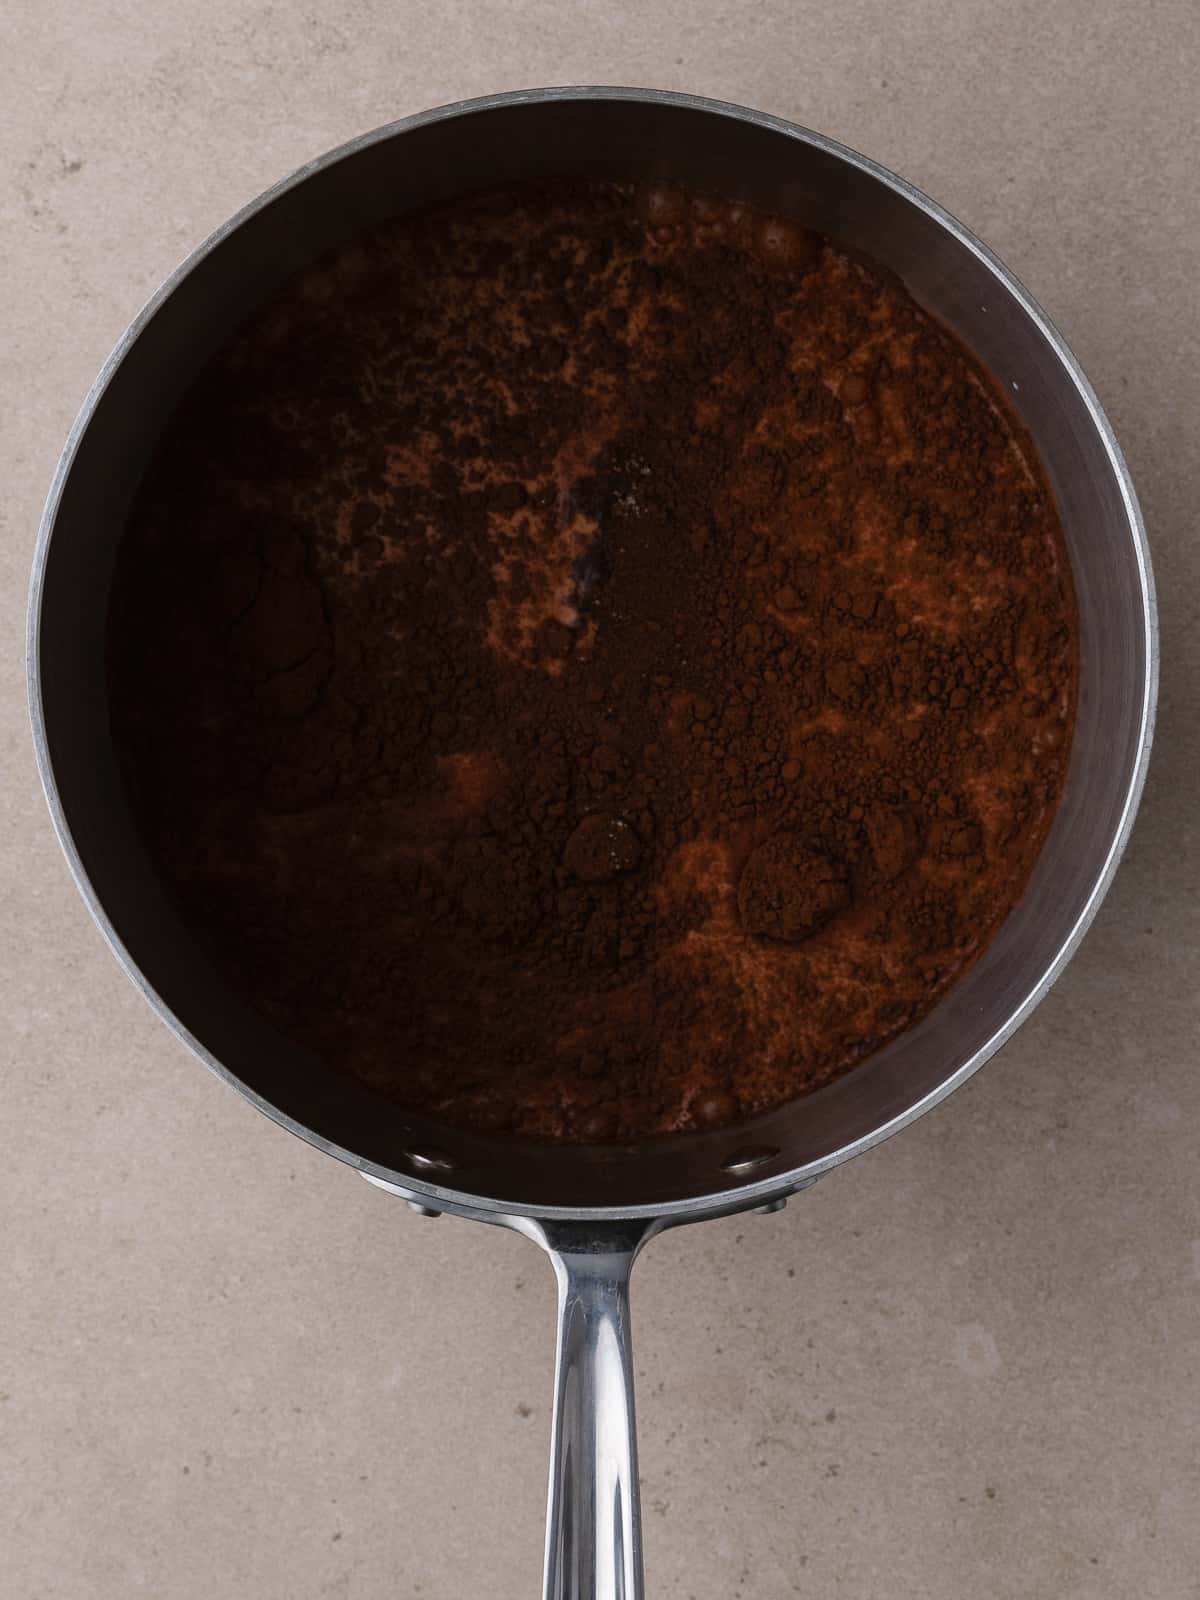 Milk, cocoa powder, espresso powder and salt are in a saucepan